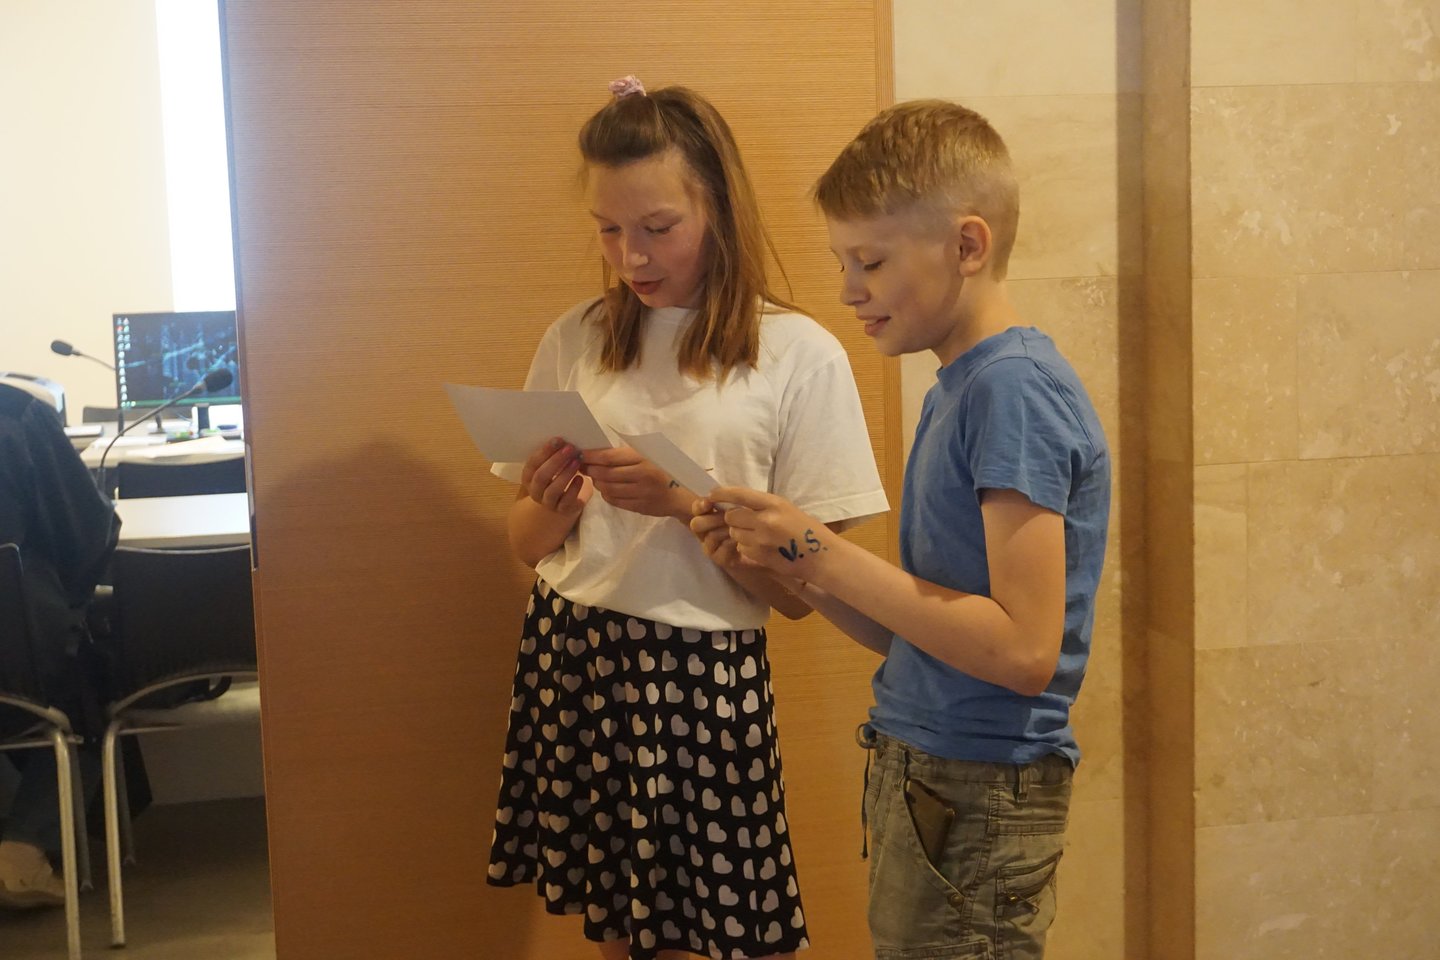  Tarptautinę vaikų gynimo dieną Kauno apylinkės teisme vyko inszenizuotas renginys moksleiviams, po kurio vaikai piešė, vaišinosi skanėstais.<br> Kauno apylinkės teismo nuotr.